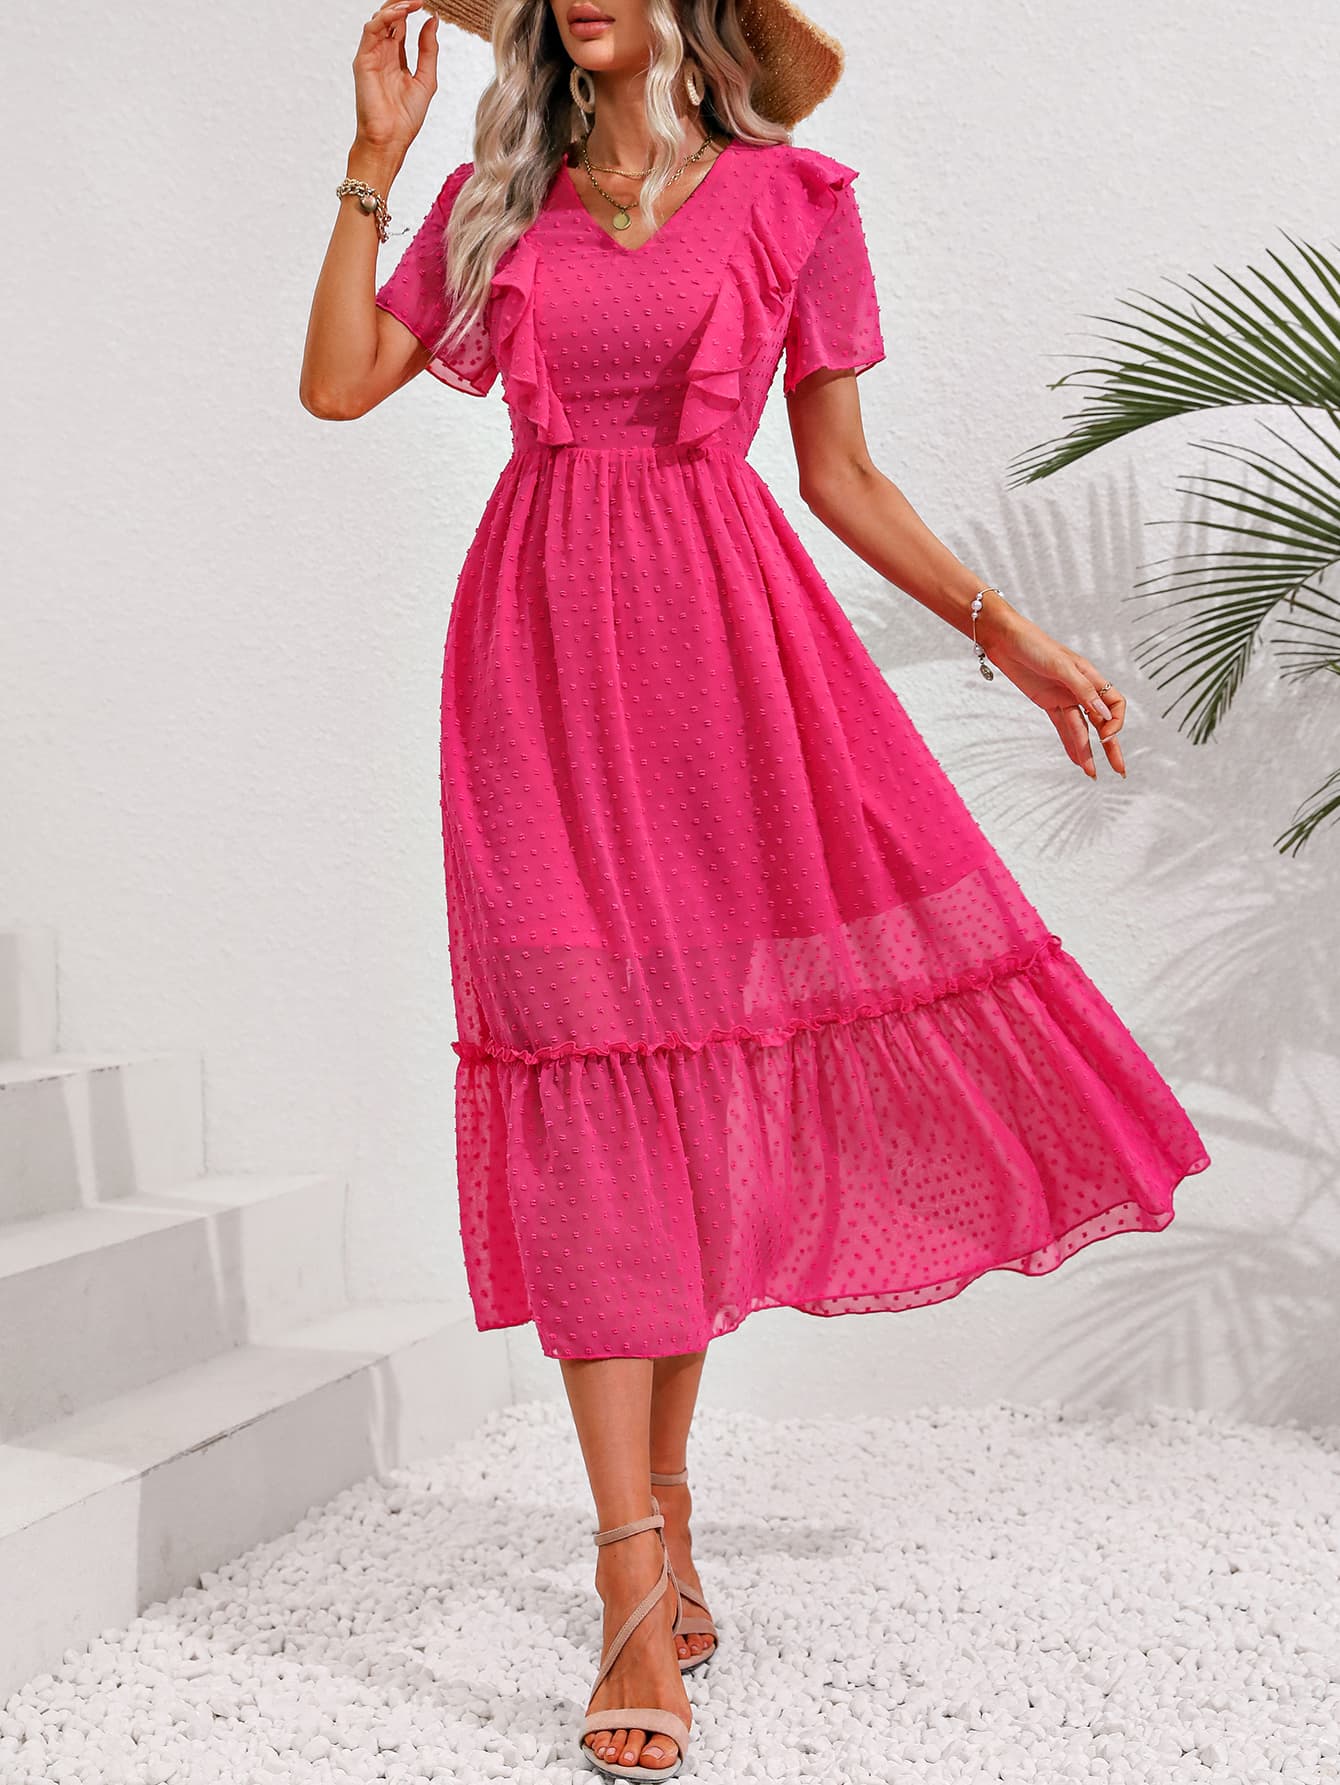 Hot Pink Swiss Dot Ruffled Short Sleeve Dress